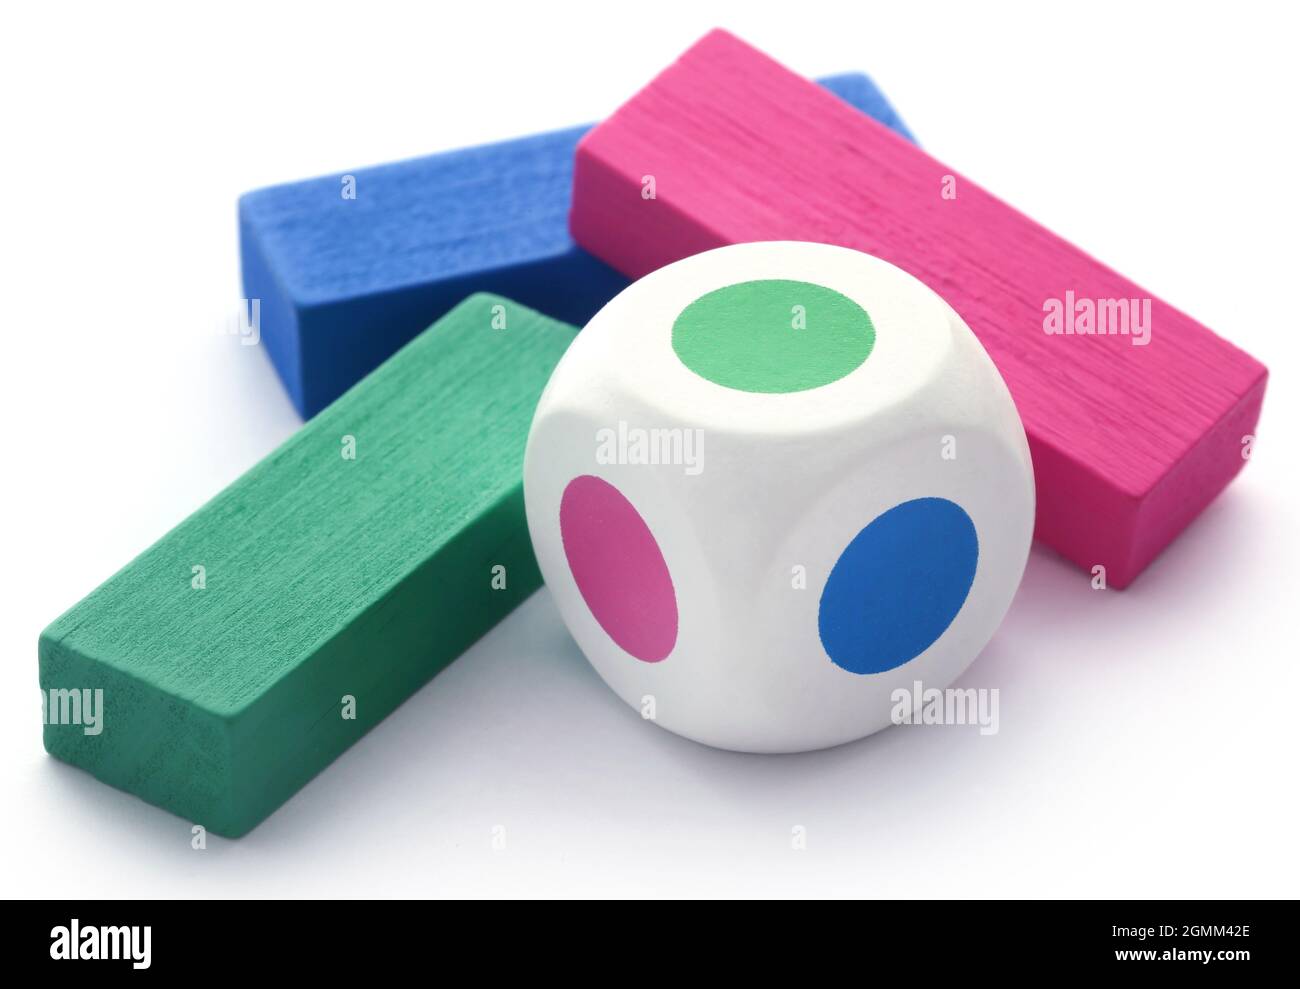 Blocchi di legno colorati come un gioco per bambini Foto Stock